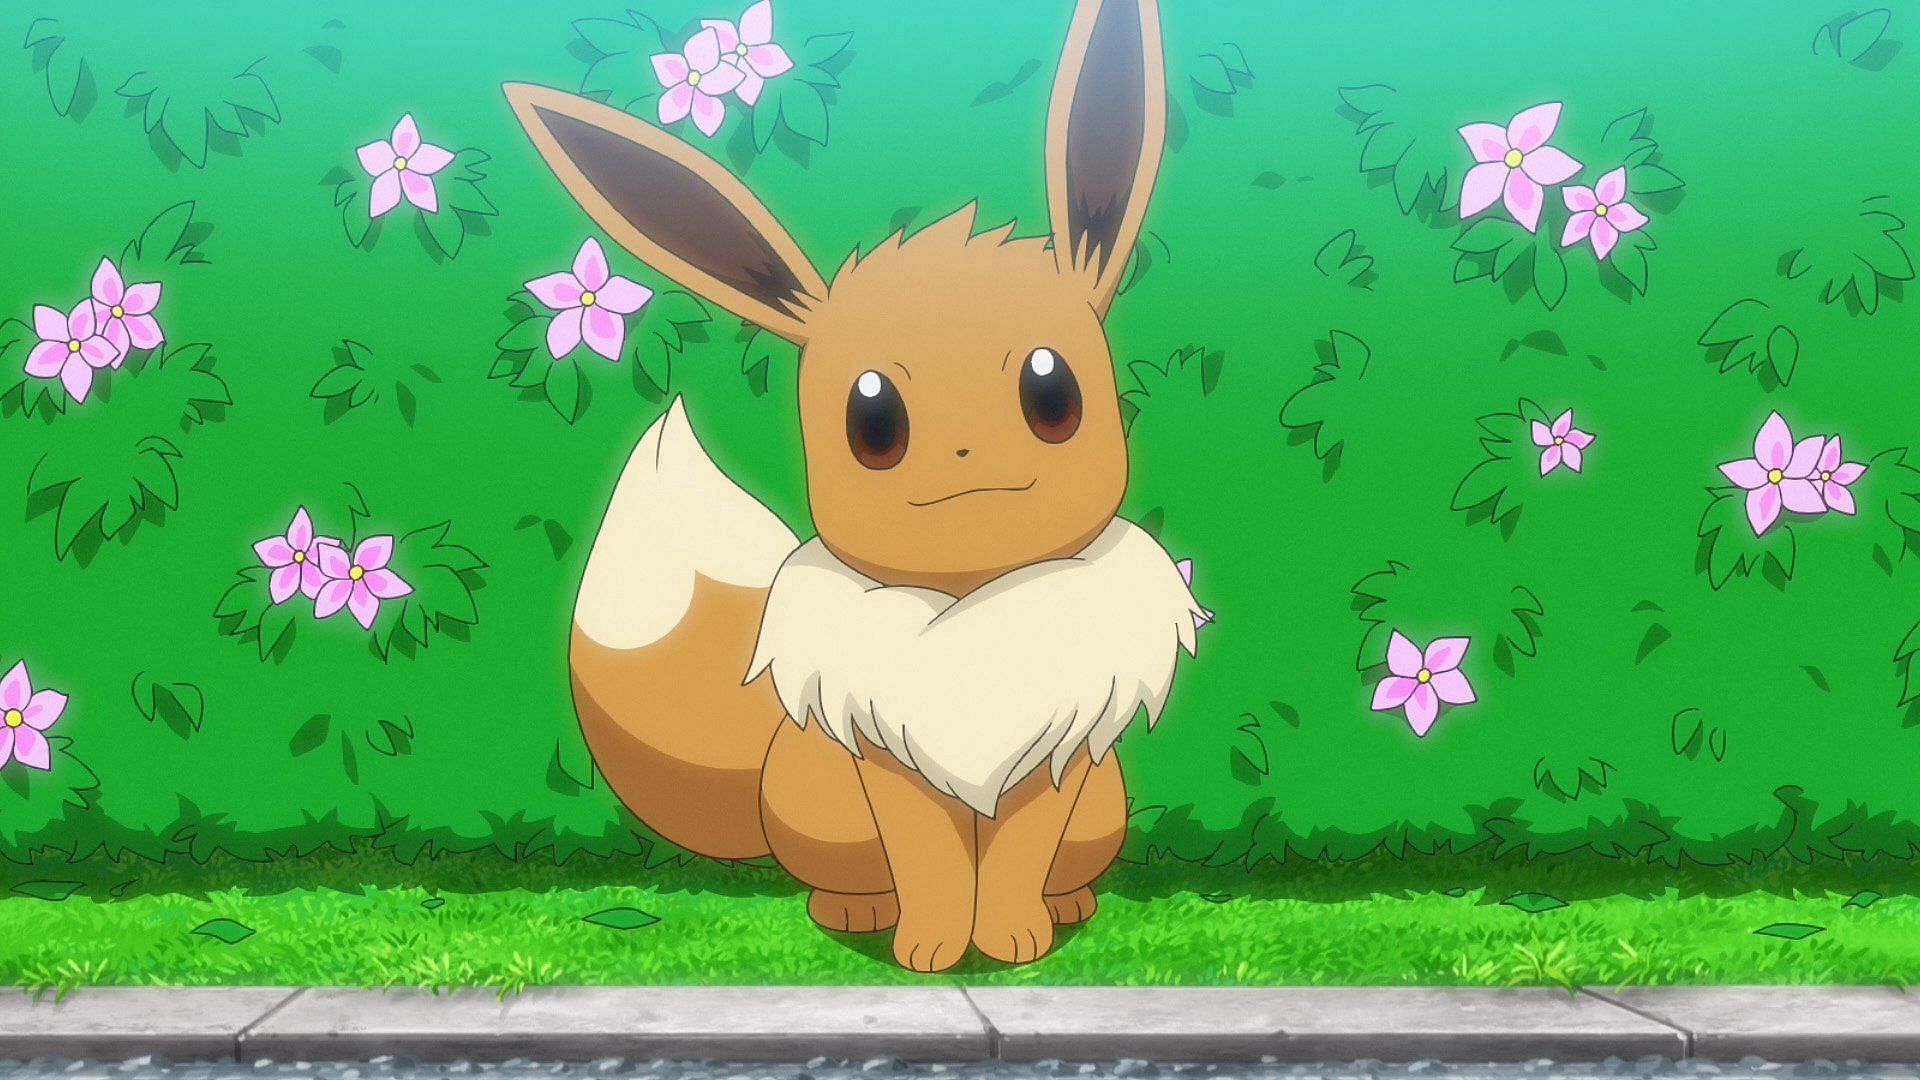 Eevee as it looks in the Pokemon anime (Image via The Pokemon Company)